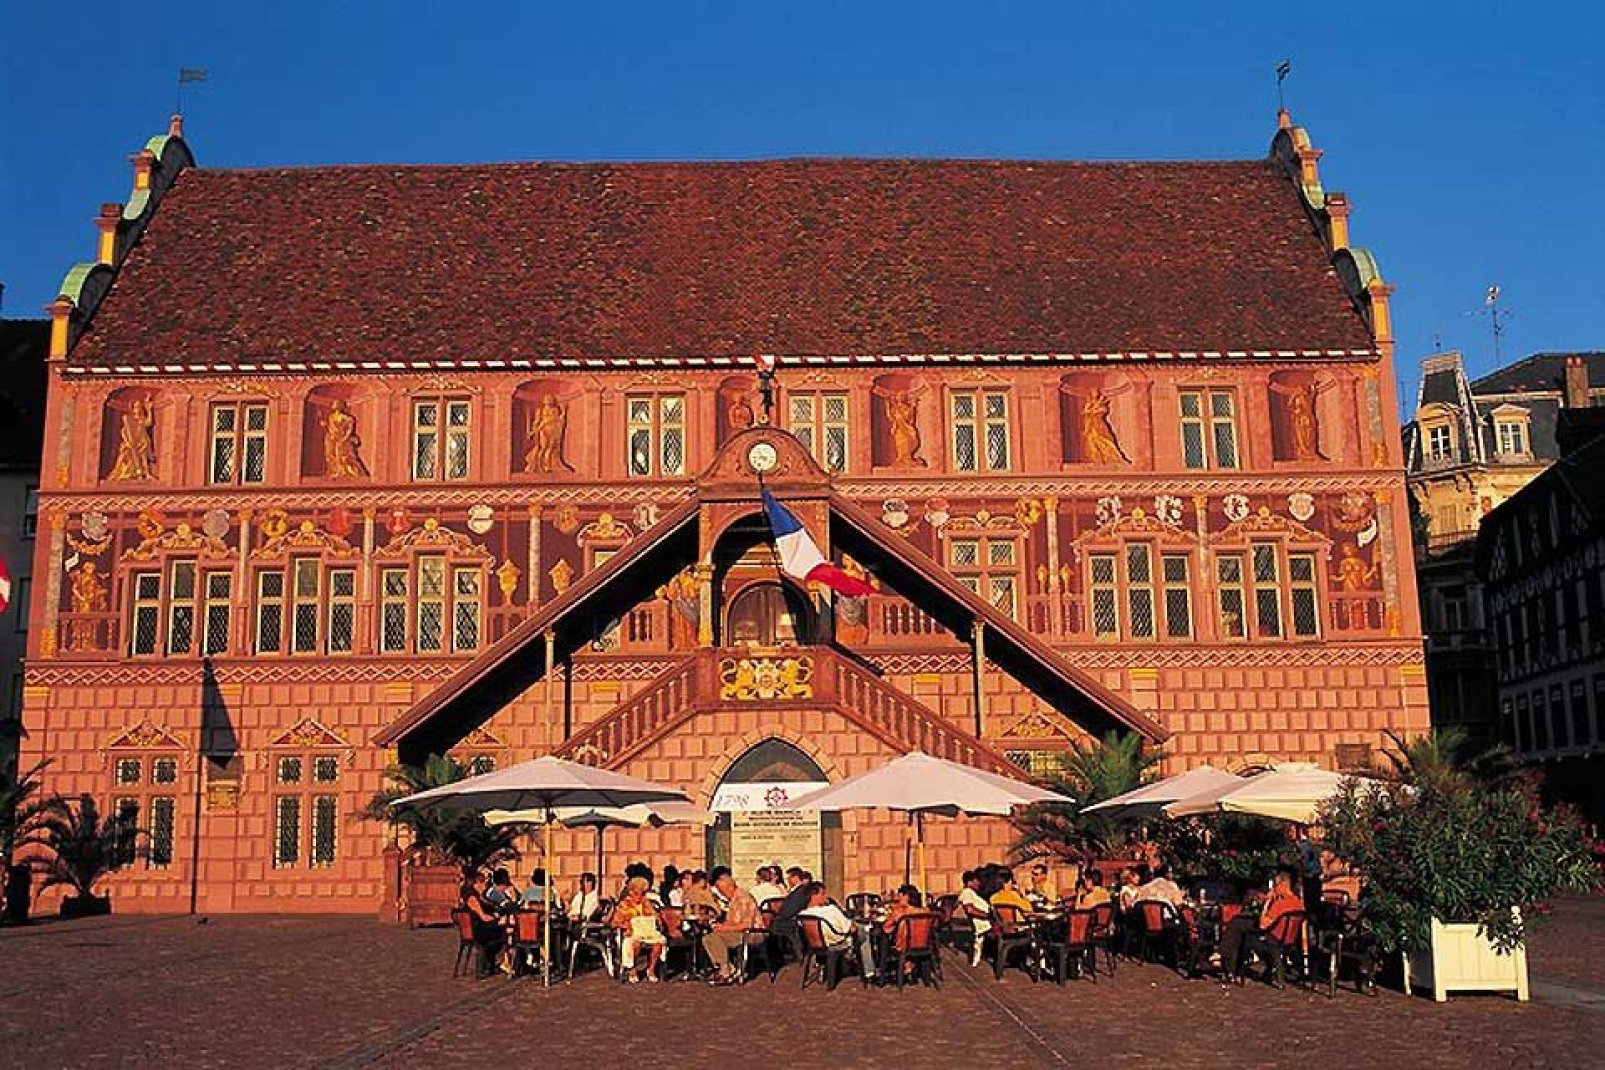 Dieses Baudenkmal wurde 1552 errichtet und ist ein typisches Beispiel für die Architektur der Rheinischen Renaissance. Im Inneren kann man die Wandfresken aus dem 16. Jahrhundert bewundern.